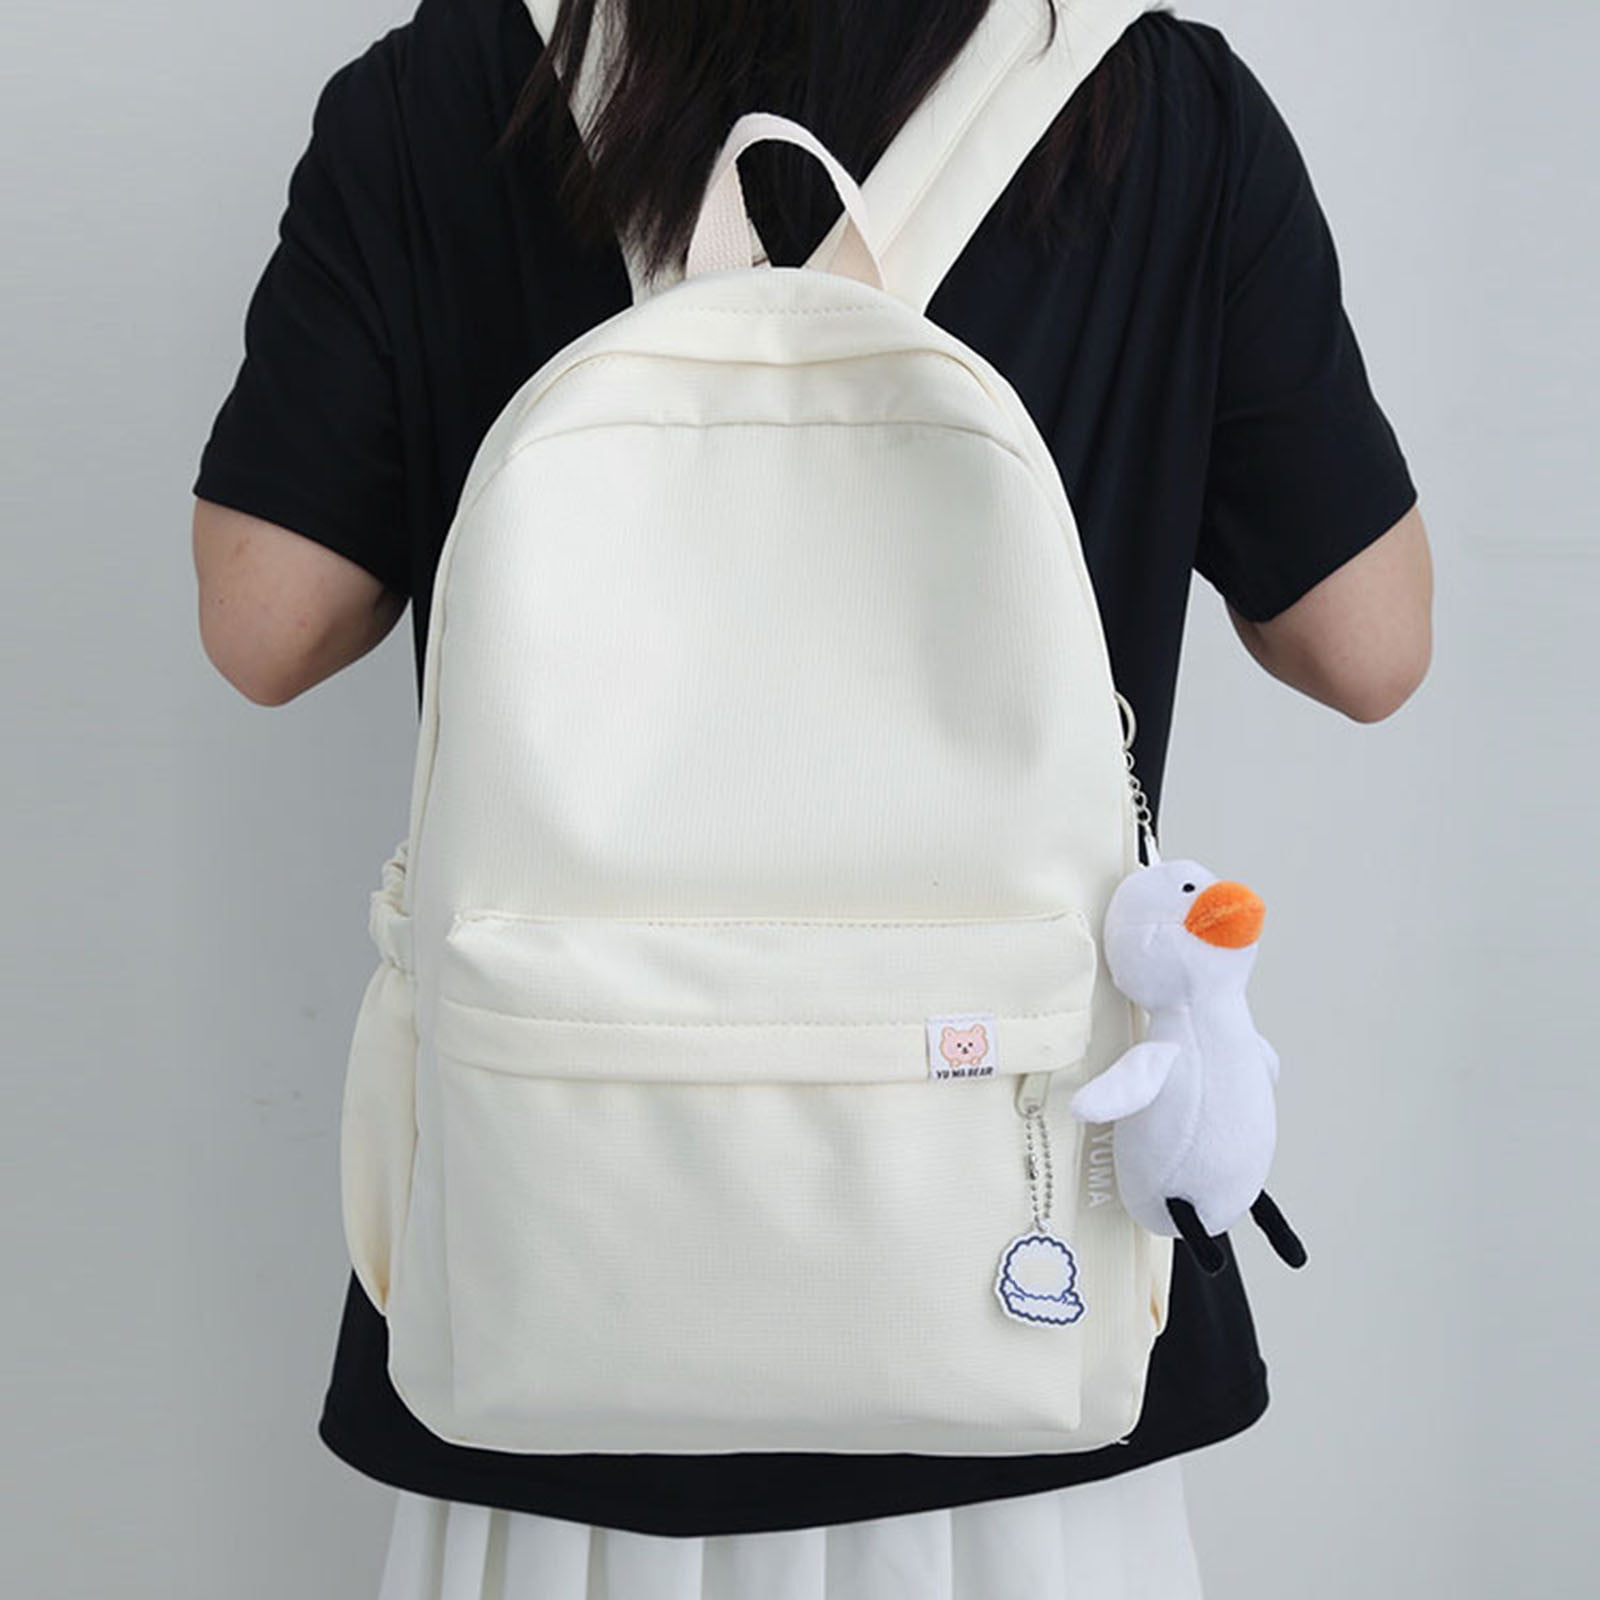 I've Got your Back…Pack: 2014 Back to School Backpacks